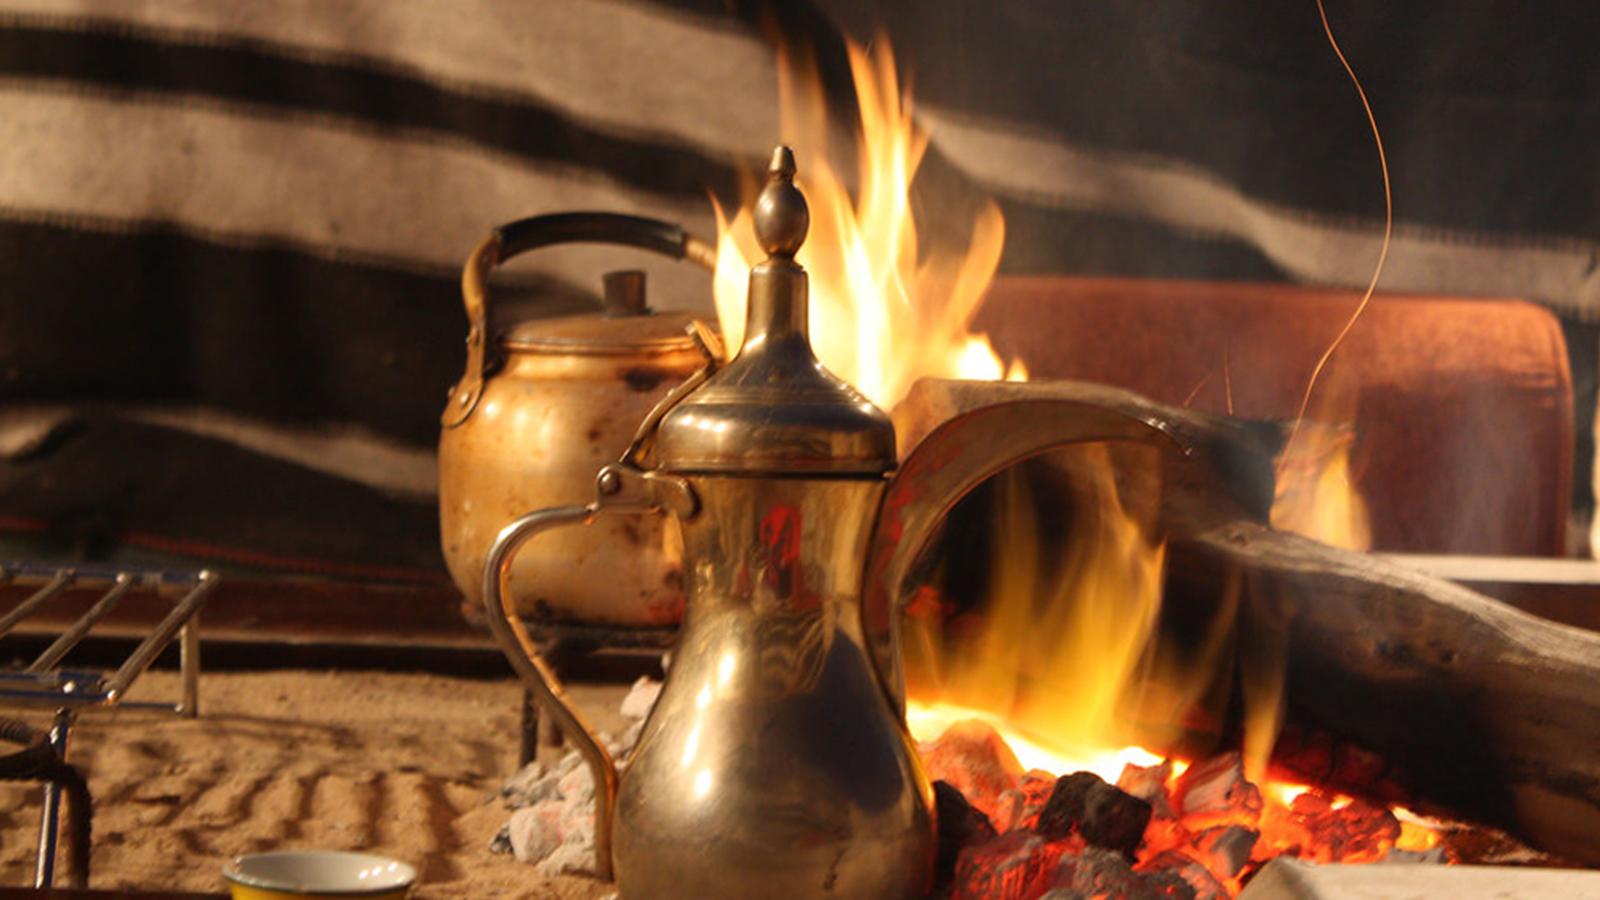 ‪دلة قهوة قطرية على النار، وتفضل دول الخليج القهوة الصفراء الفاتحة بعد التحميص الخفيف مع الزنجبيل والزعفران والقرنفل‬ (مواقع التواصل)